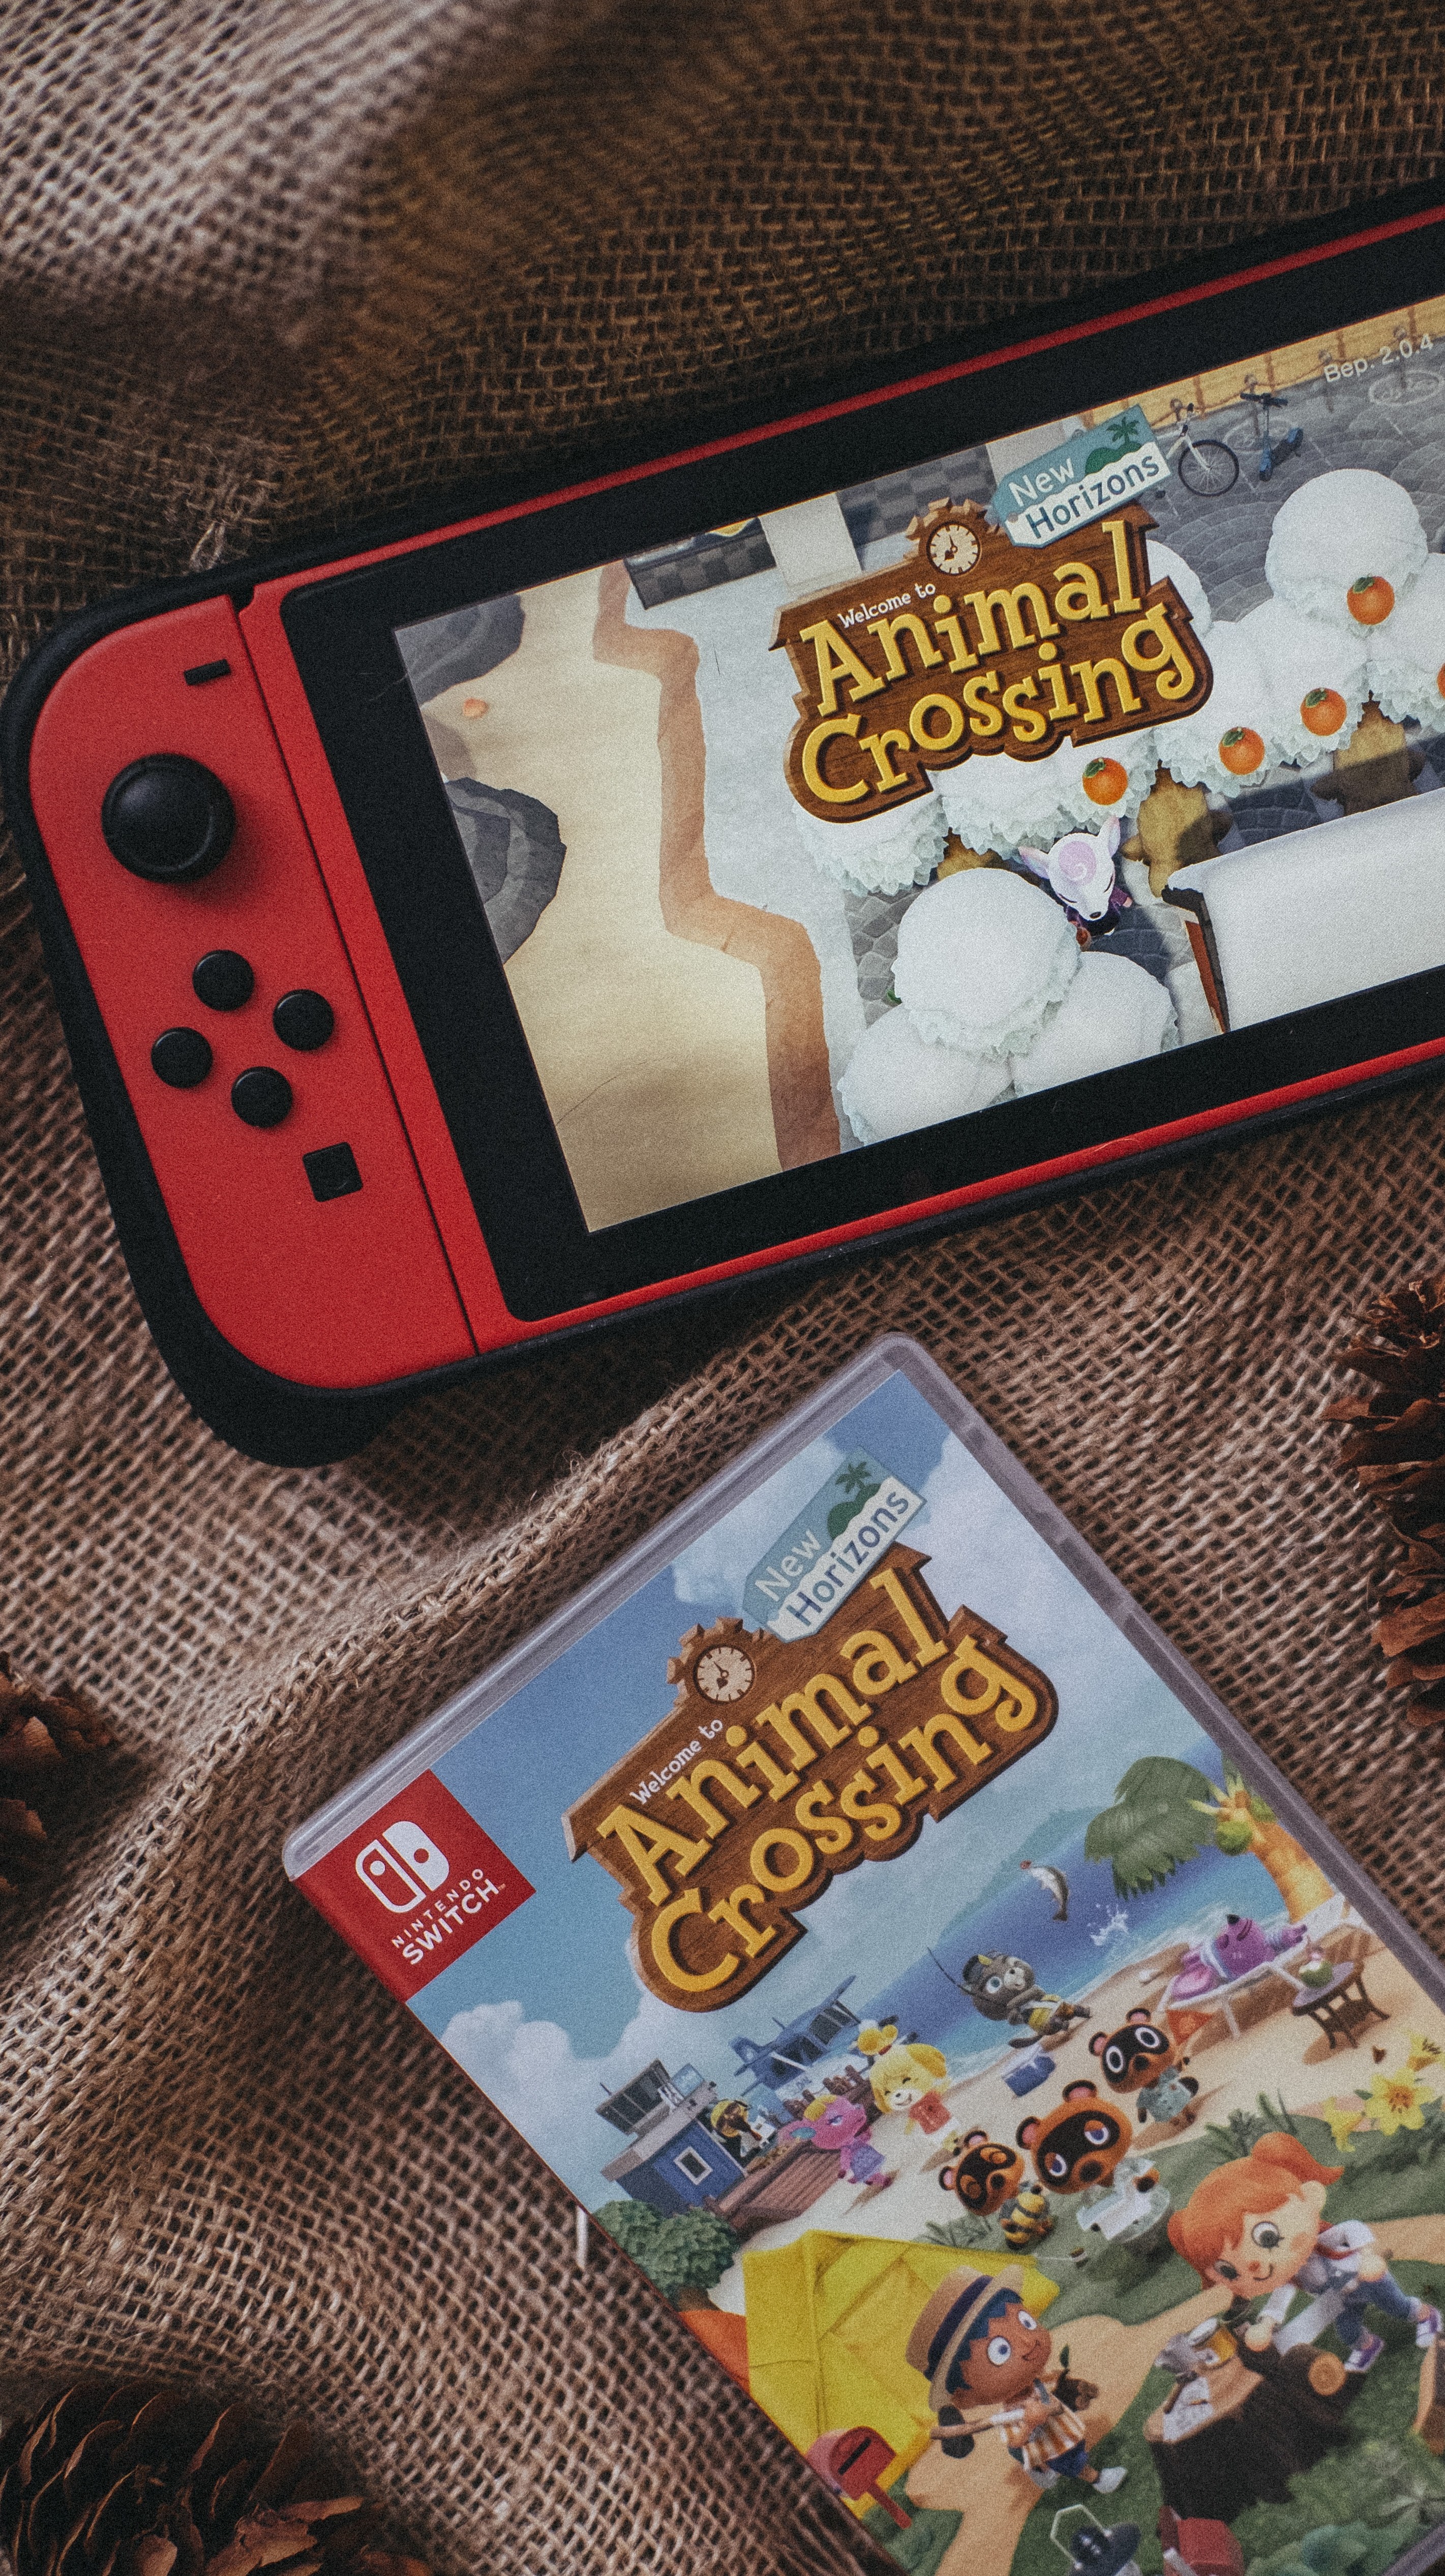 Jogos Nintendo, Os Melhores Títulos para a Consola Nintendo Switch